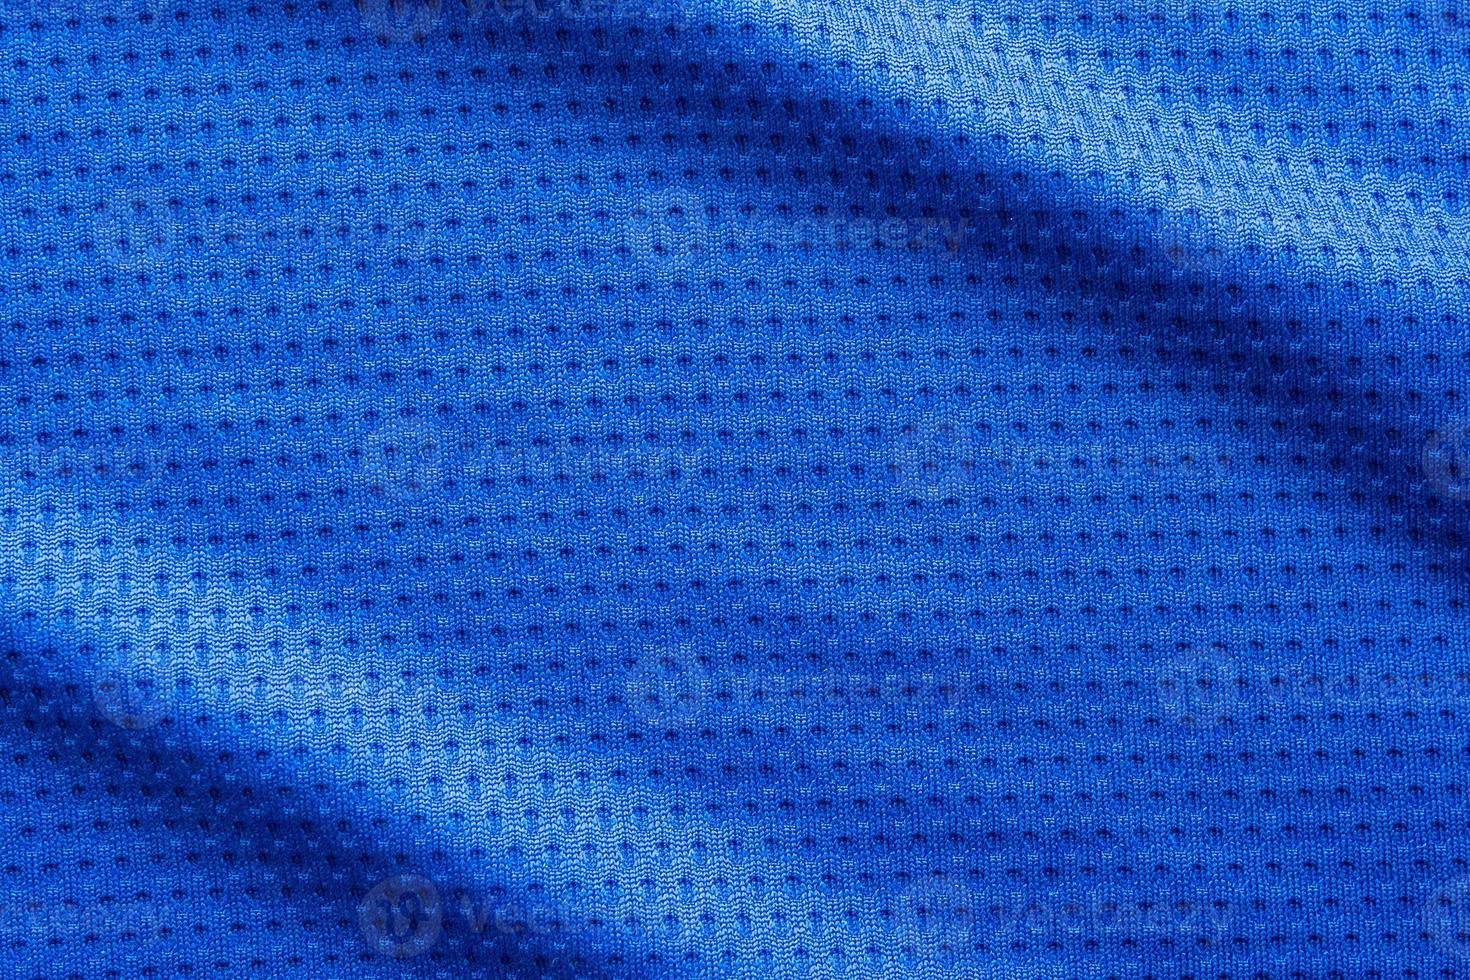 maglia da calcio di abbigliamento sportivo in tessuto di colore blu con sfondo a trama di maglia d'aria foto